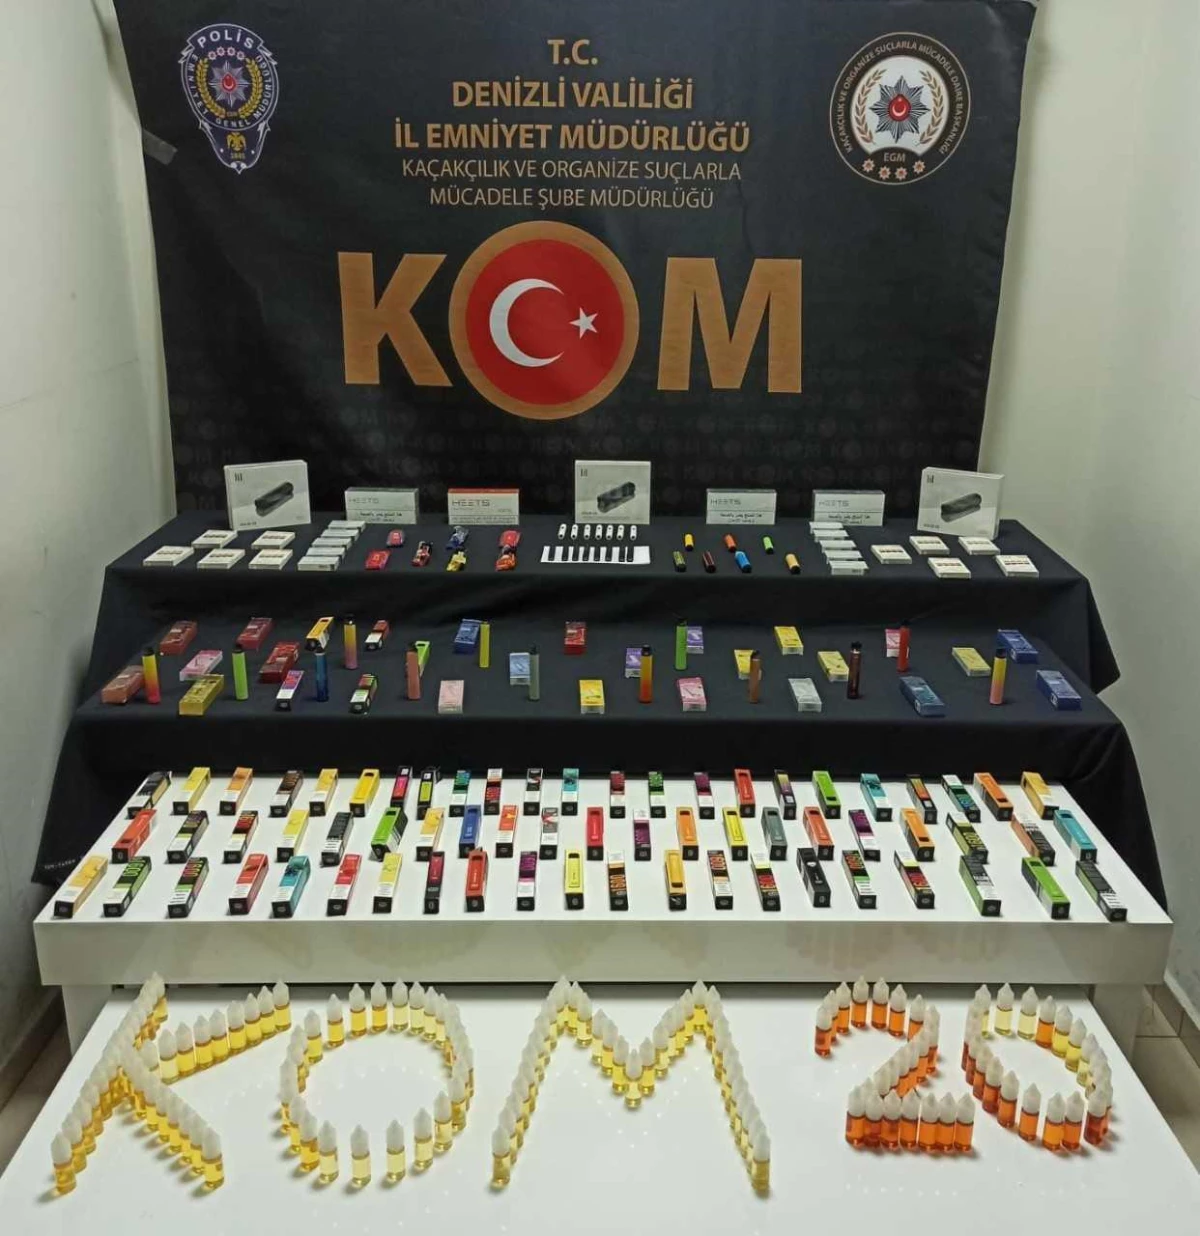 Denizli merkezli kaçak elektronik sigara operasyonunda 1 kişi tutuklandı